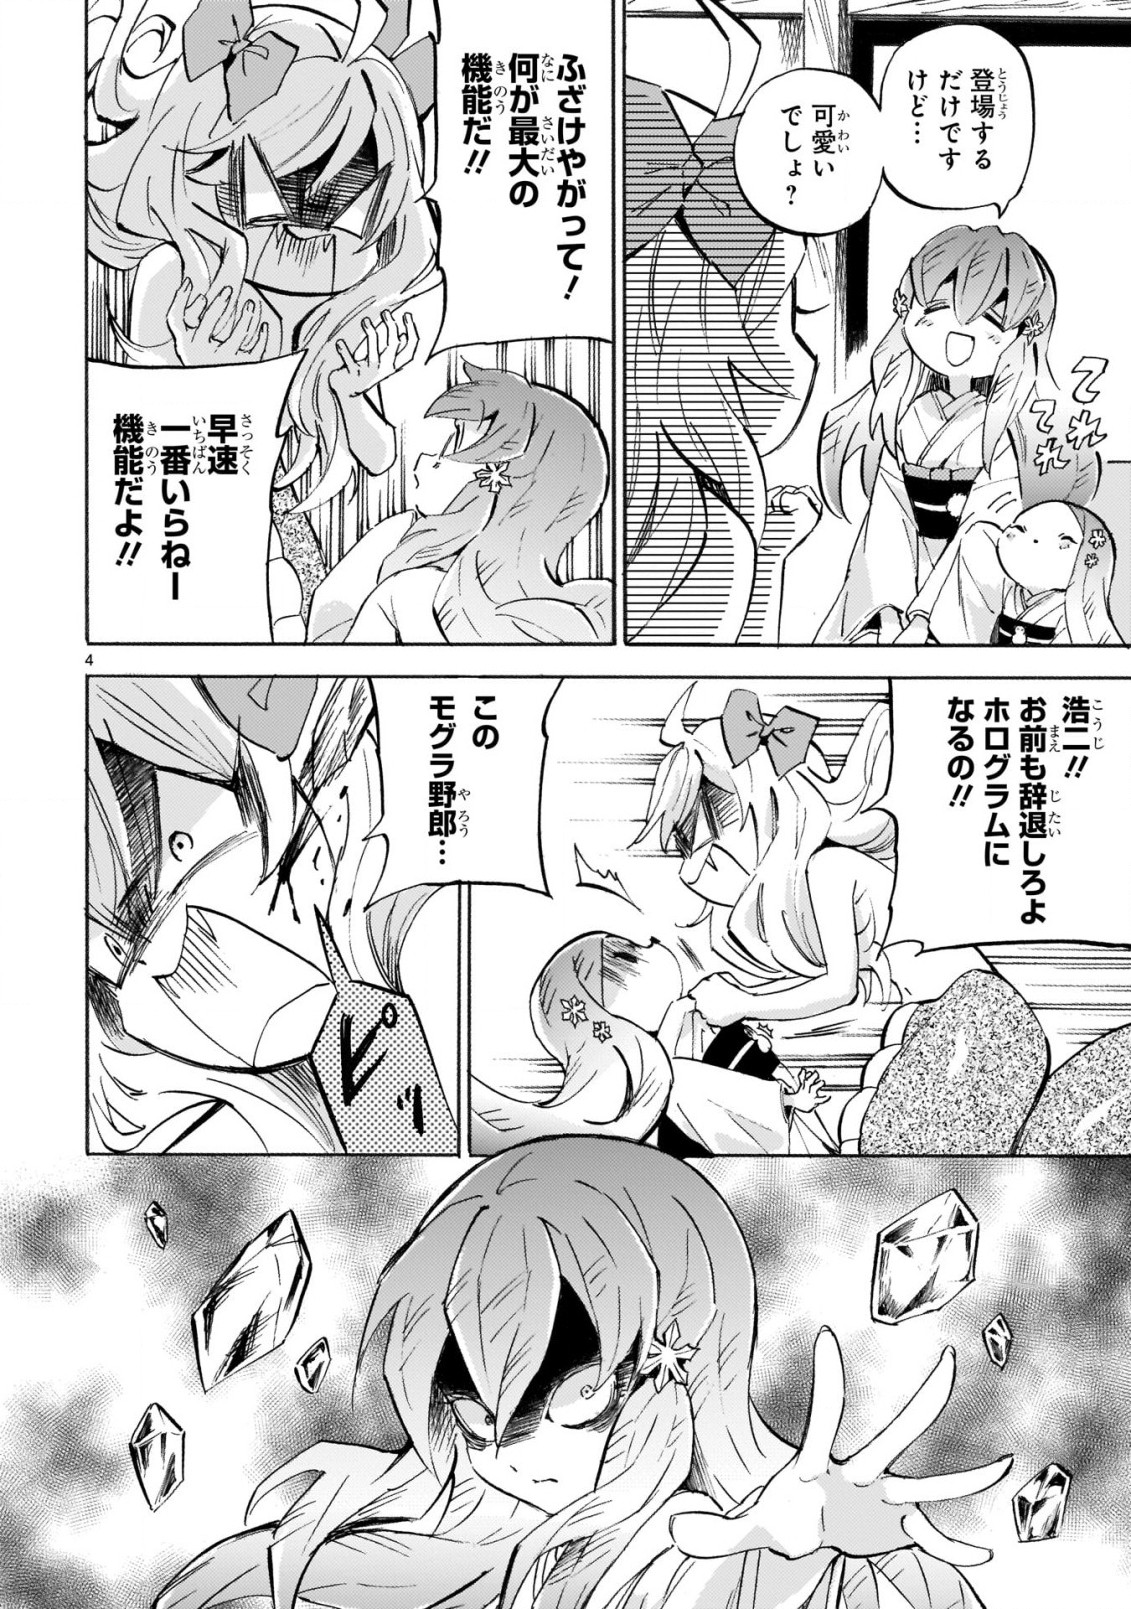 Jashin-chan Dropkick - Chapter 220 - Page 4